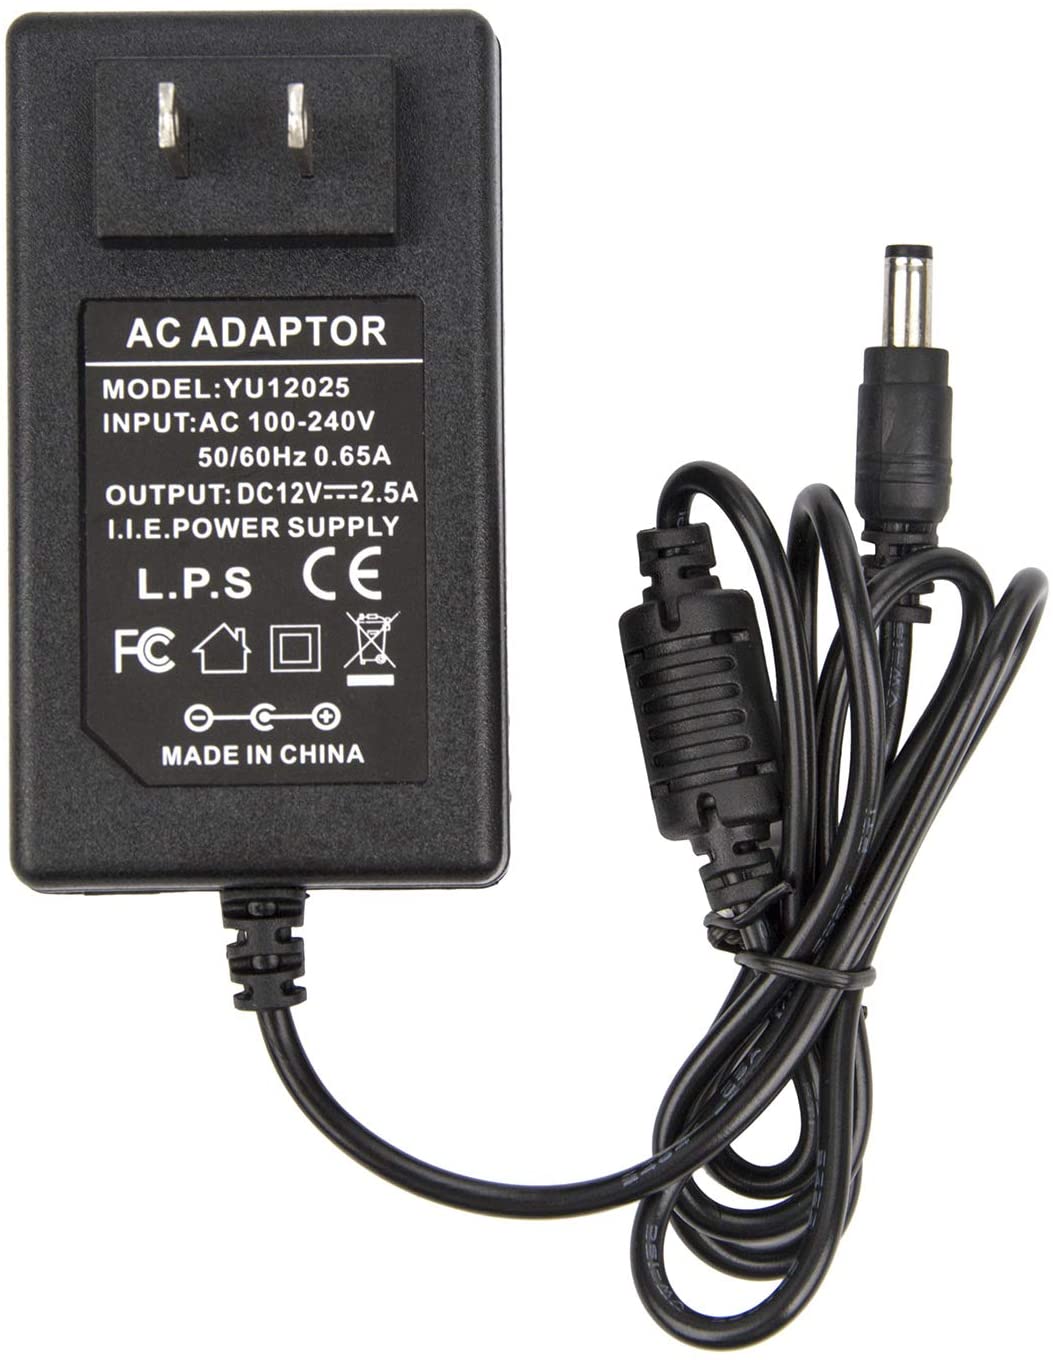 Adaptador de corriente de 12 V 2.5 A – Coolm AC 100-240 V a DC 12 V 2500 mA Fuente de Alimentación Cargador de Transformador 12 V/2.5 A para 12 V analógico DVR NVR HVR CCTV/luces de tira LED RGB